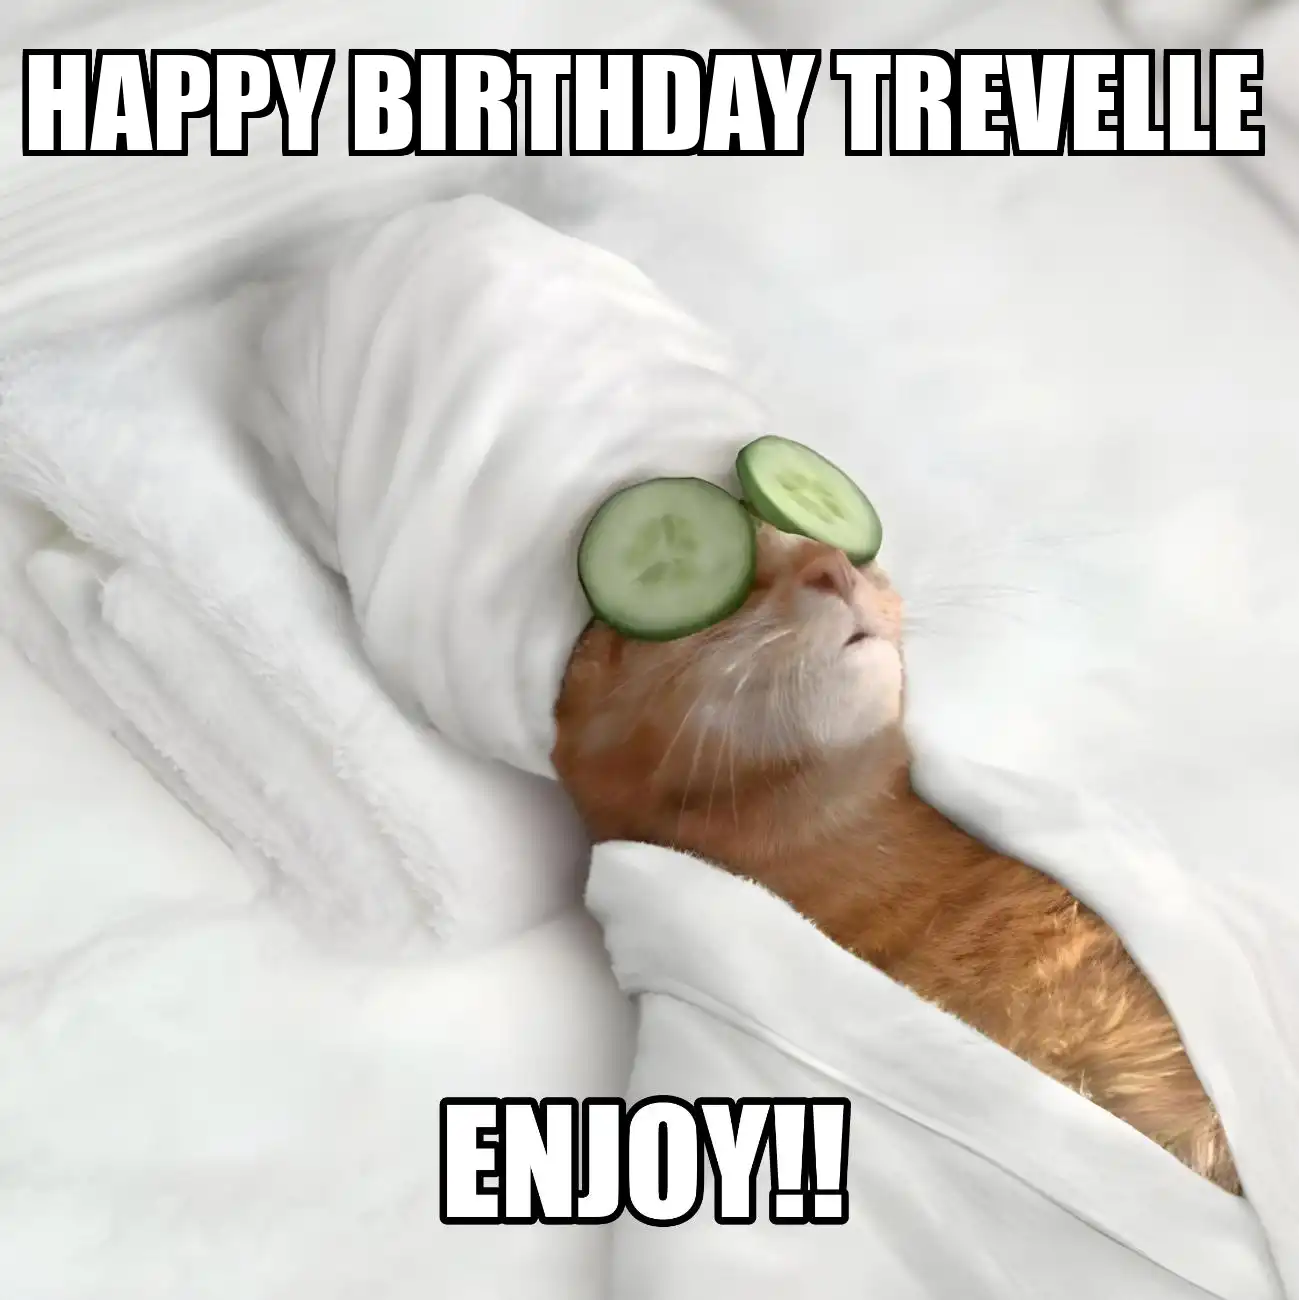 Happy Birthday Trevelle Enjoy Cat Meme